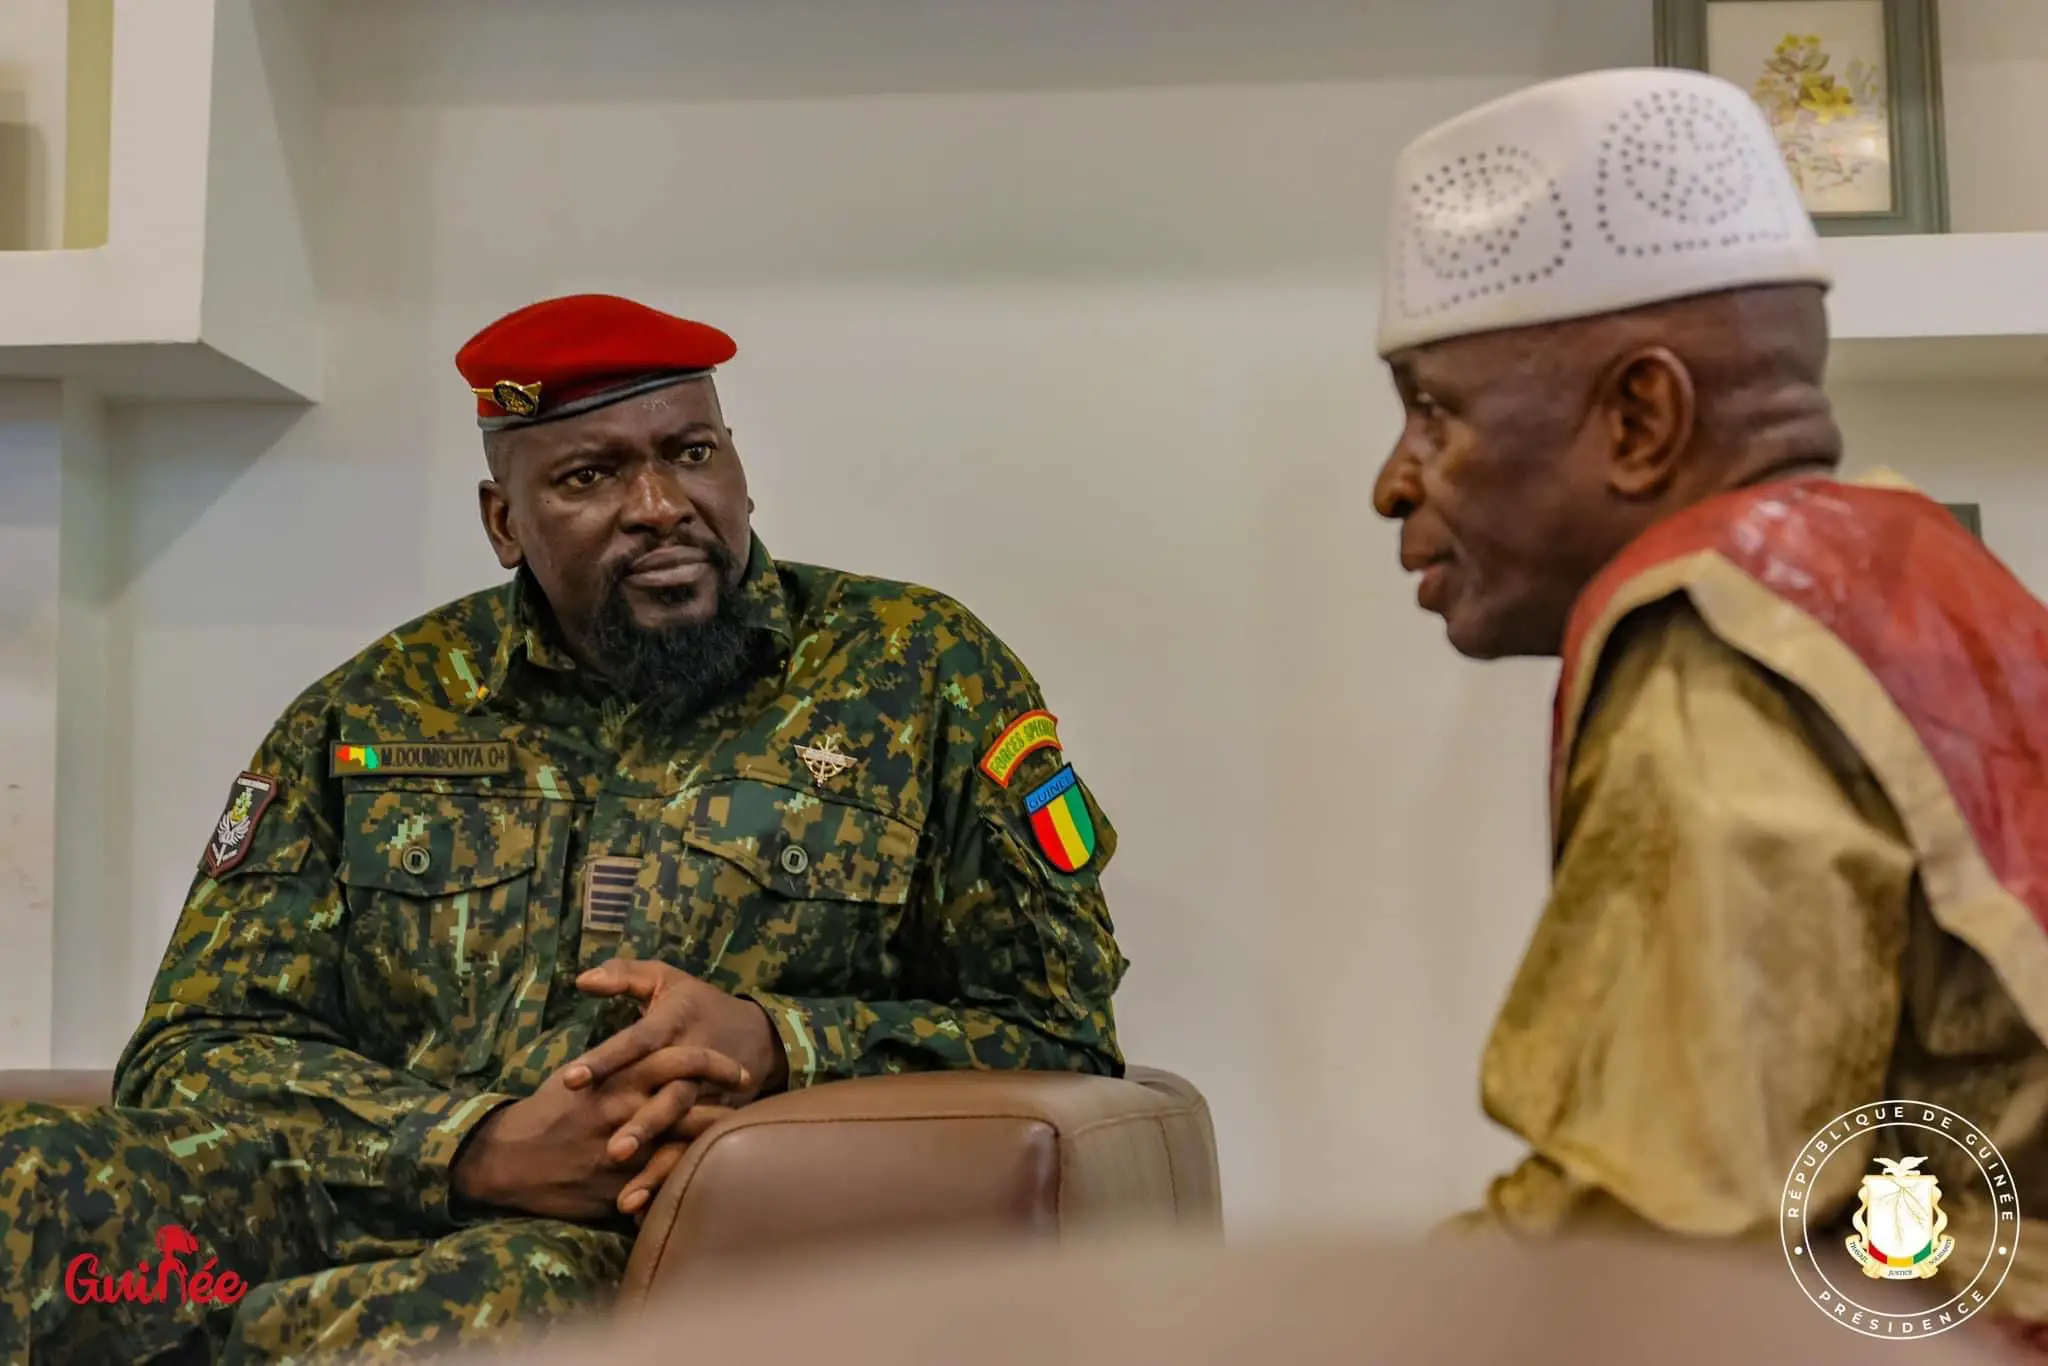 Guinée : un général retraité devient ministre pour traquer les domaines spoliés de l’État